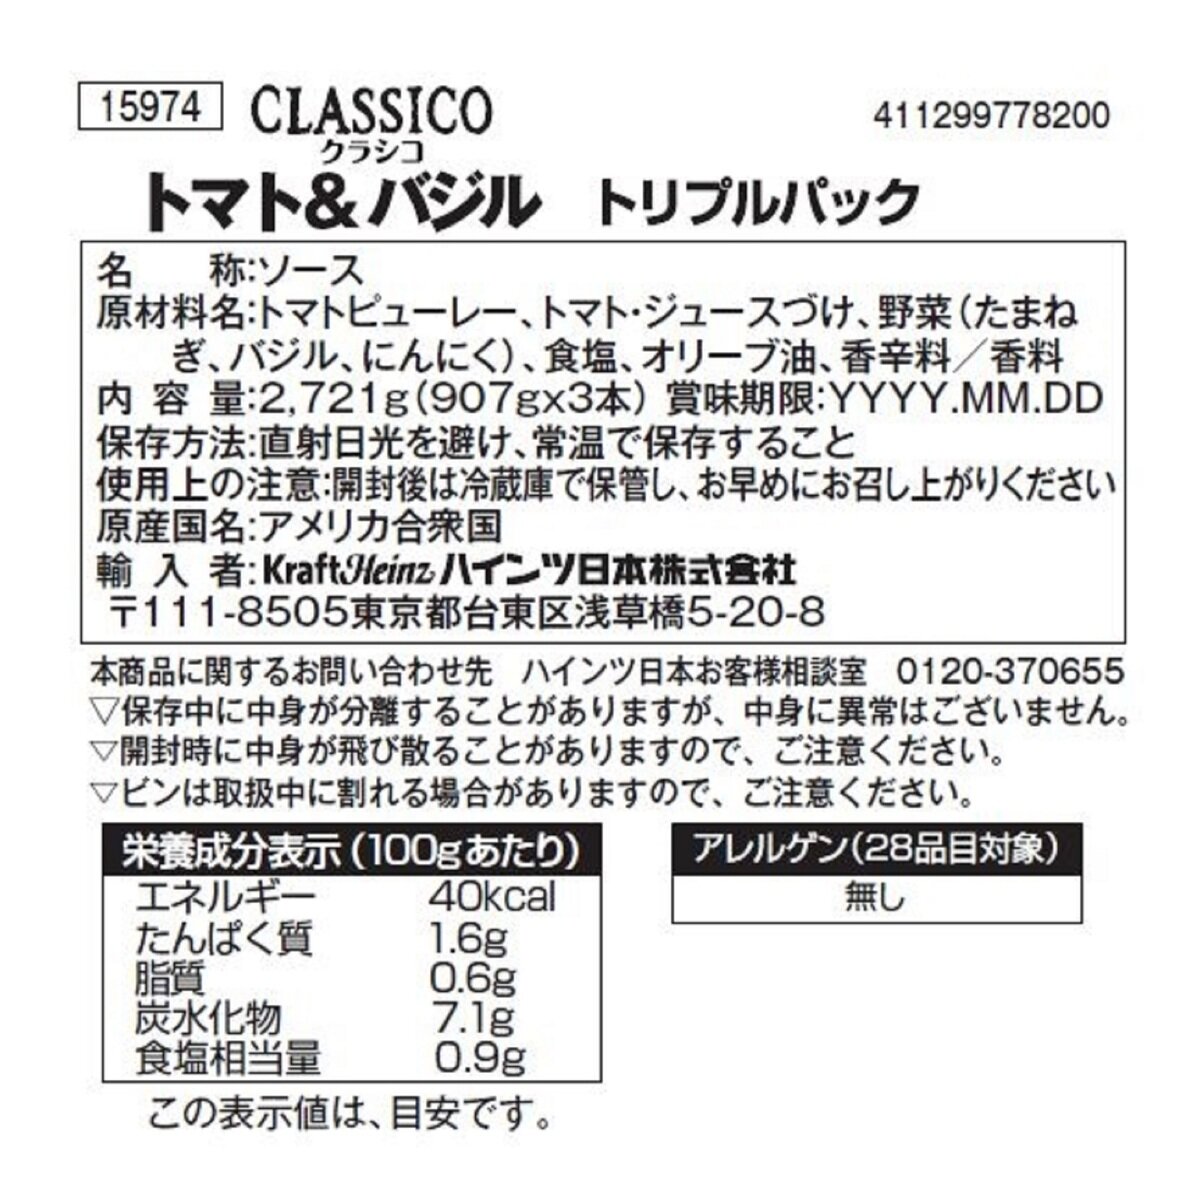 Costco　3本　x　907g　クラシコパスタソース　Japan